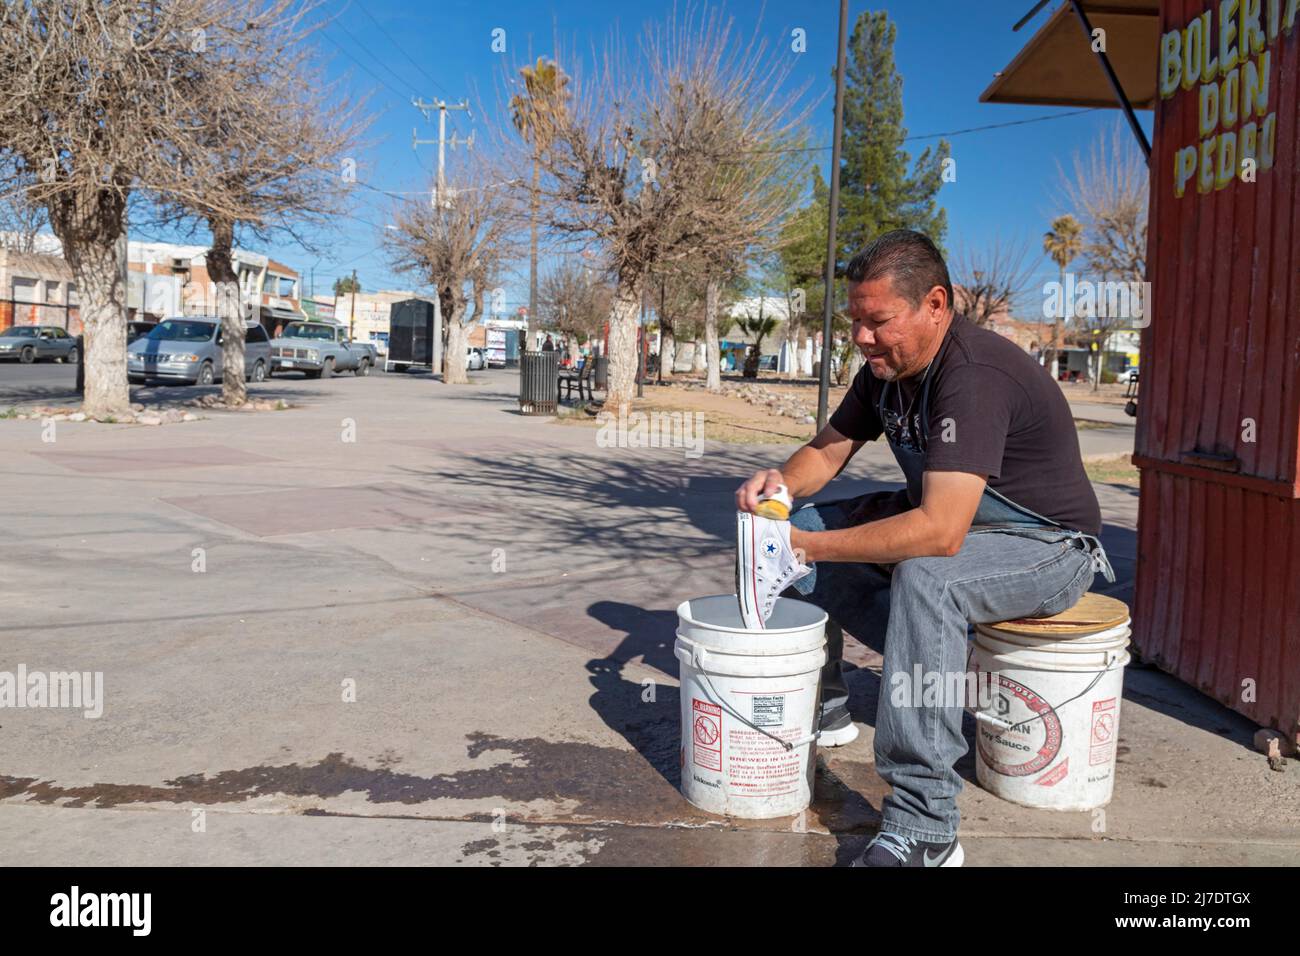 Agua Prieta, Mexique - Un homme lave à la main une paire de chaussures Converse Chuck Taylor All Star à la Bolería Don Pedro, une boutique de chaussures. Banque D'Images